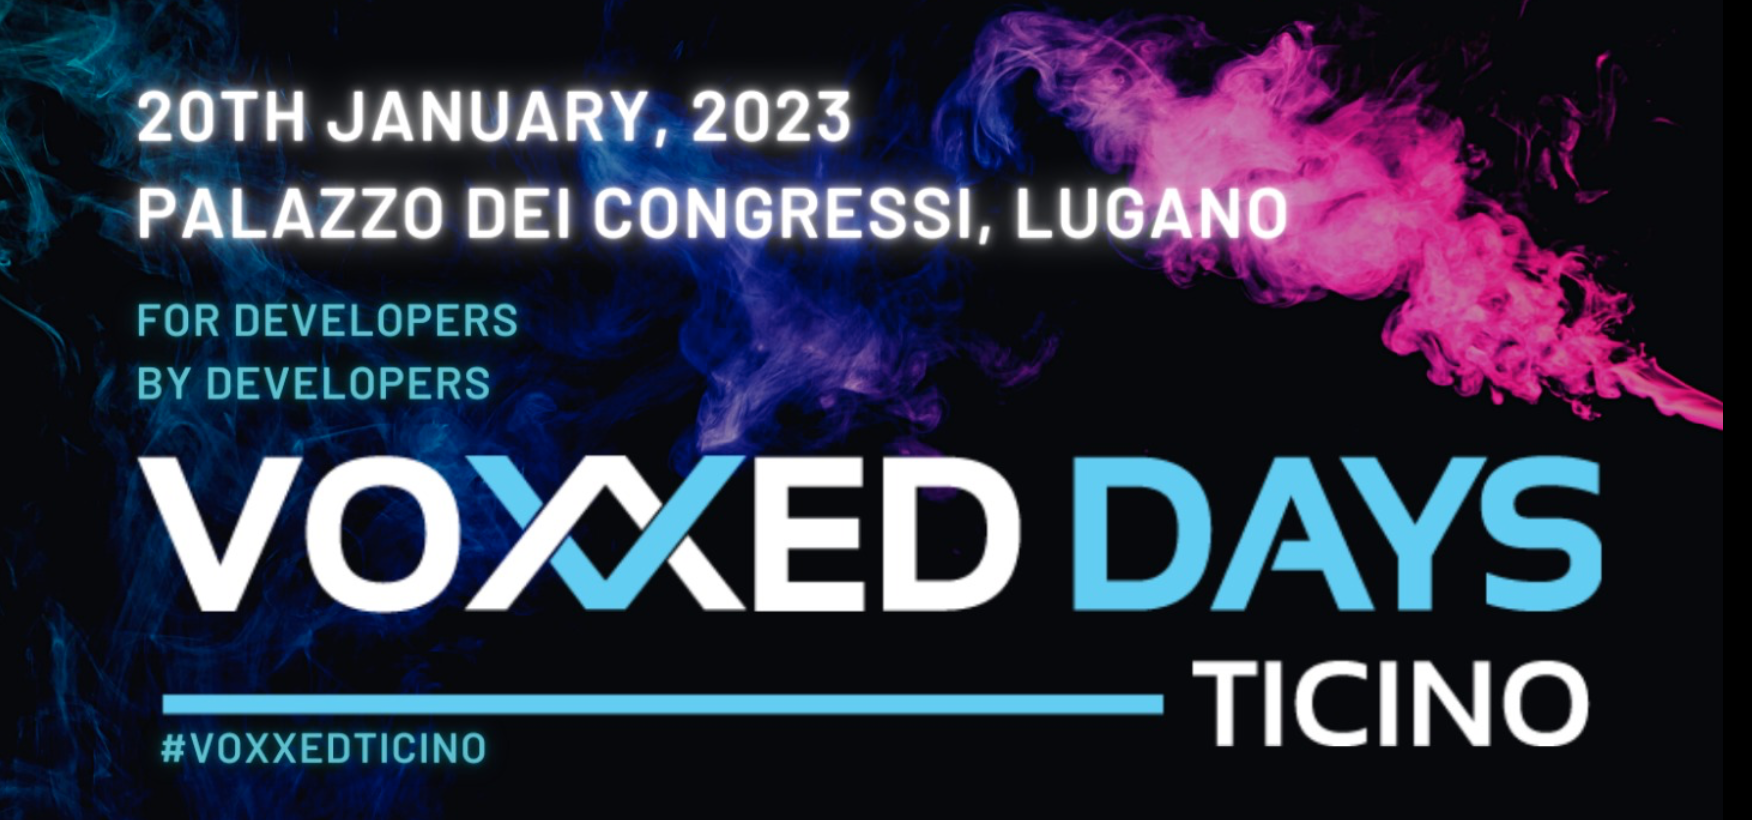 Voxxed Days: el cartel y el logo de los "Voxxed Days Ticino" 2023